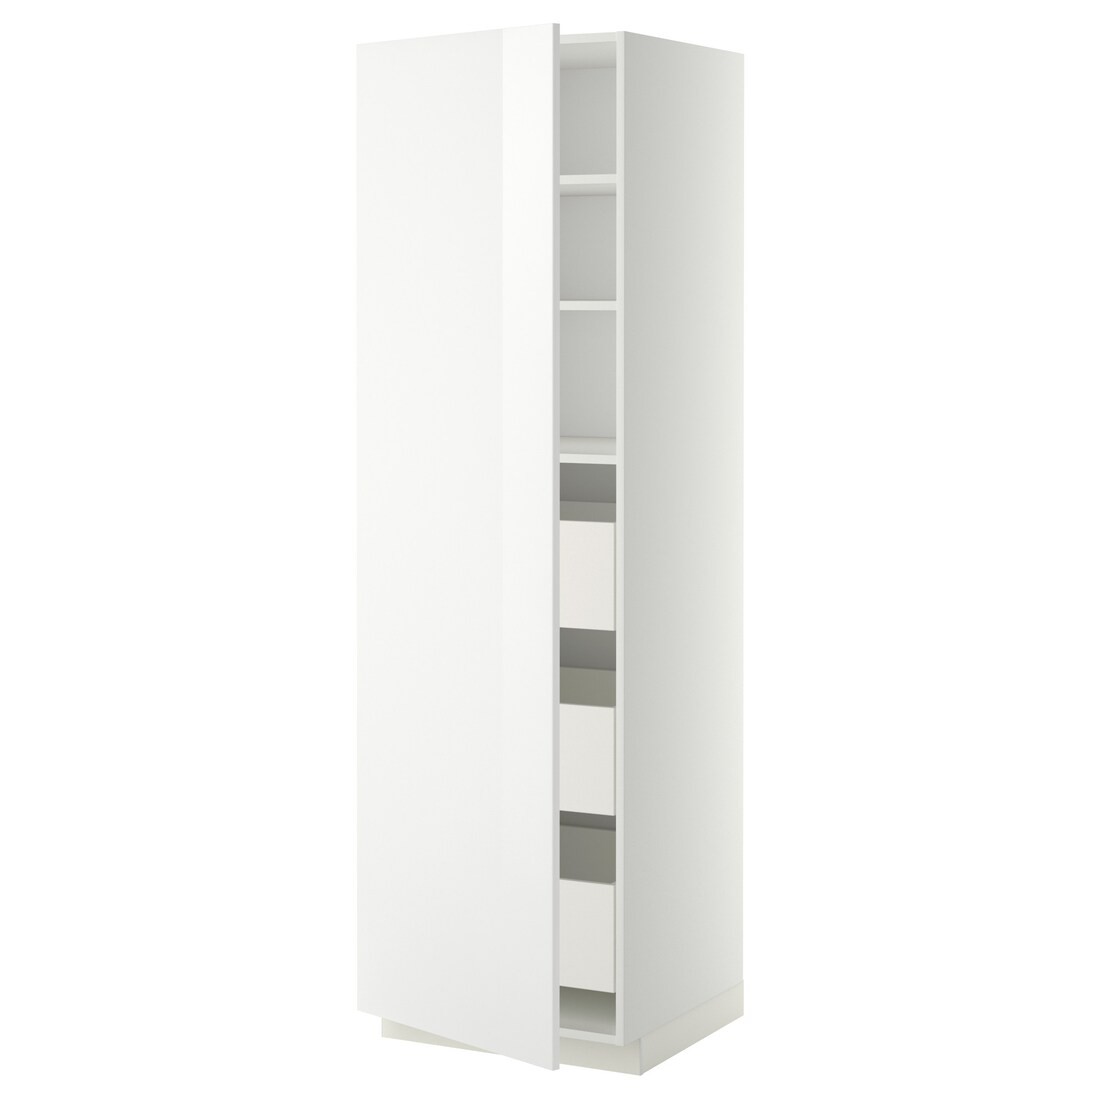 IKEA METOD МЕТОД / MAXIMERA МАКСИМЕРА Шкаф высокий с ящиками, белый / Ringhult белый, 60x60x200 см 89364737 893.647.37